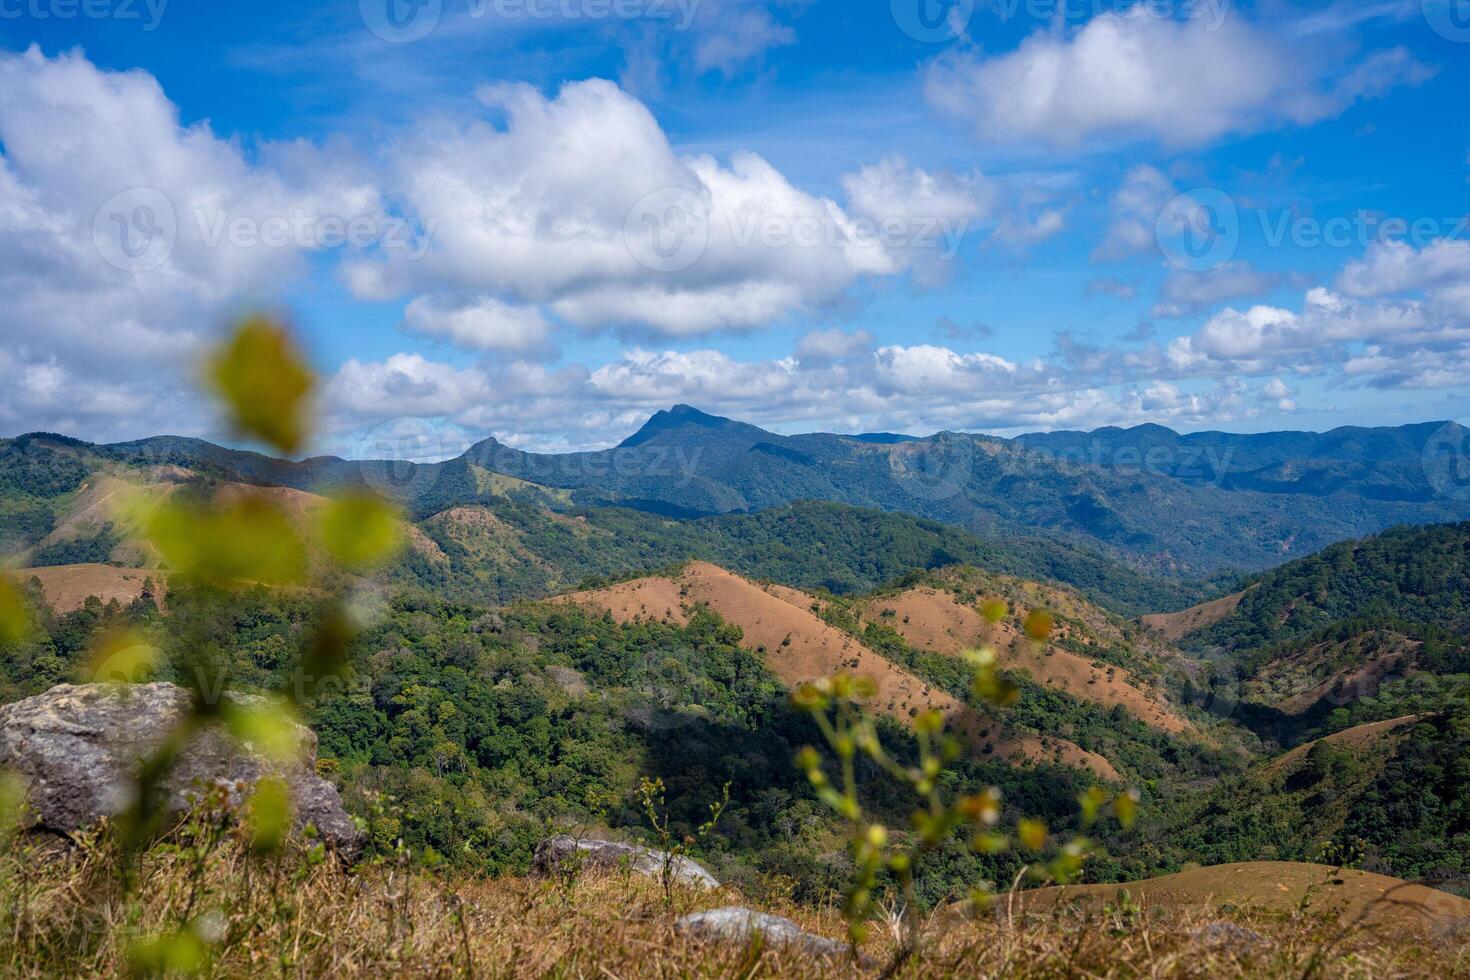 ta nang - phan mest route met mijlpaal tussen 3 provincies door gras heuvels en bossen in lied mao natuur reserveren foto